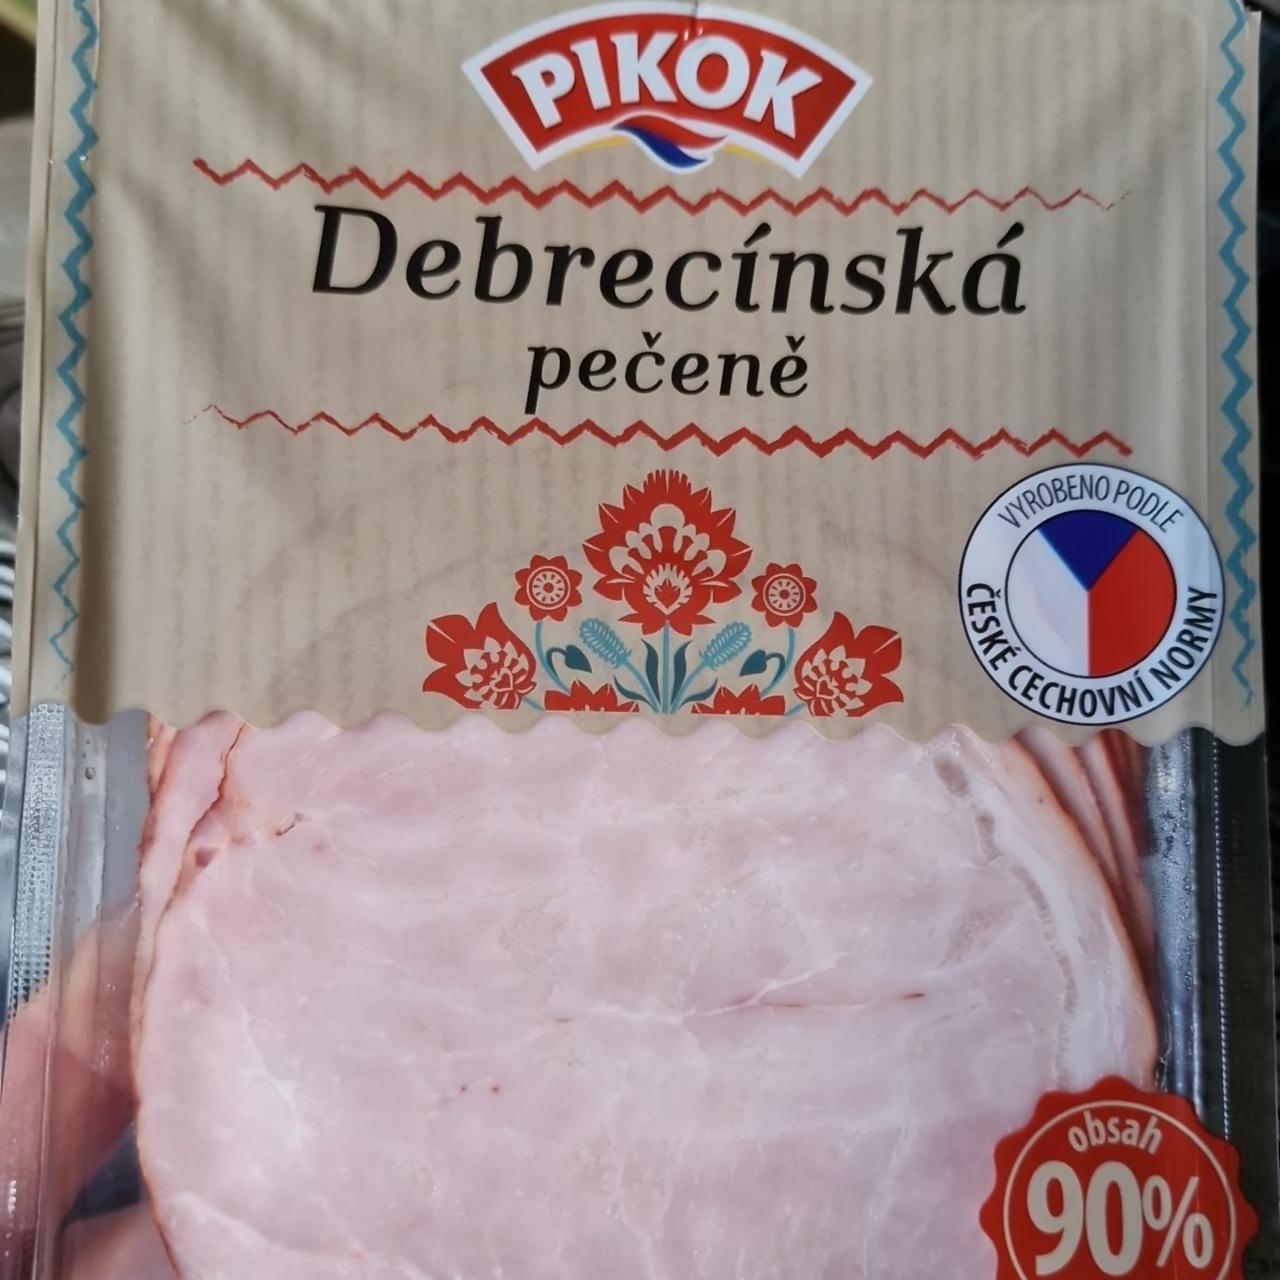 Фото - Debrecínská pečeně 90% masa Pikok